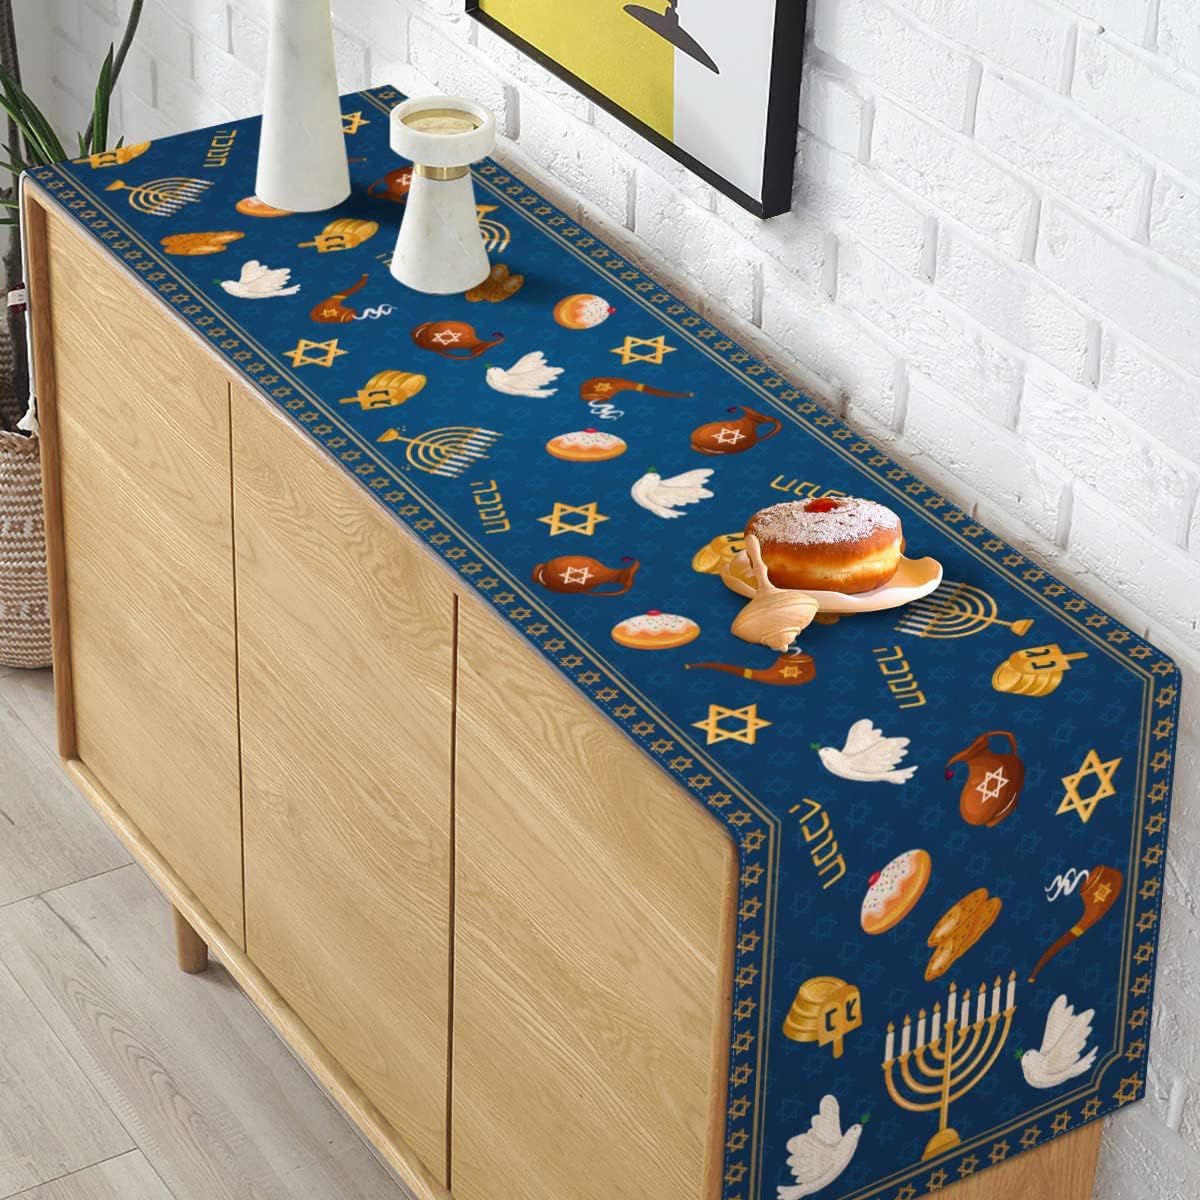 ハヌカリネンテーブルランナーホリデーパーティーの装飾ユダヤ人ハヌカメノラドレイデルデビッドダイニングテーブルランナーのキッチンの装飾のスター